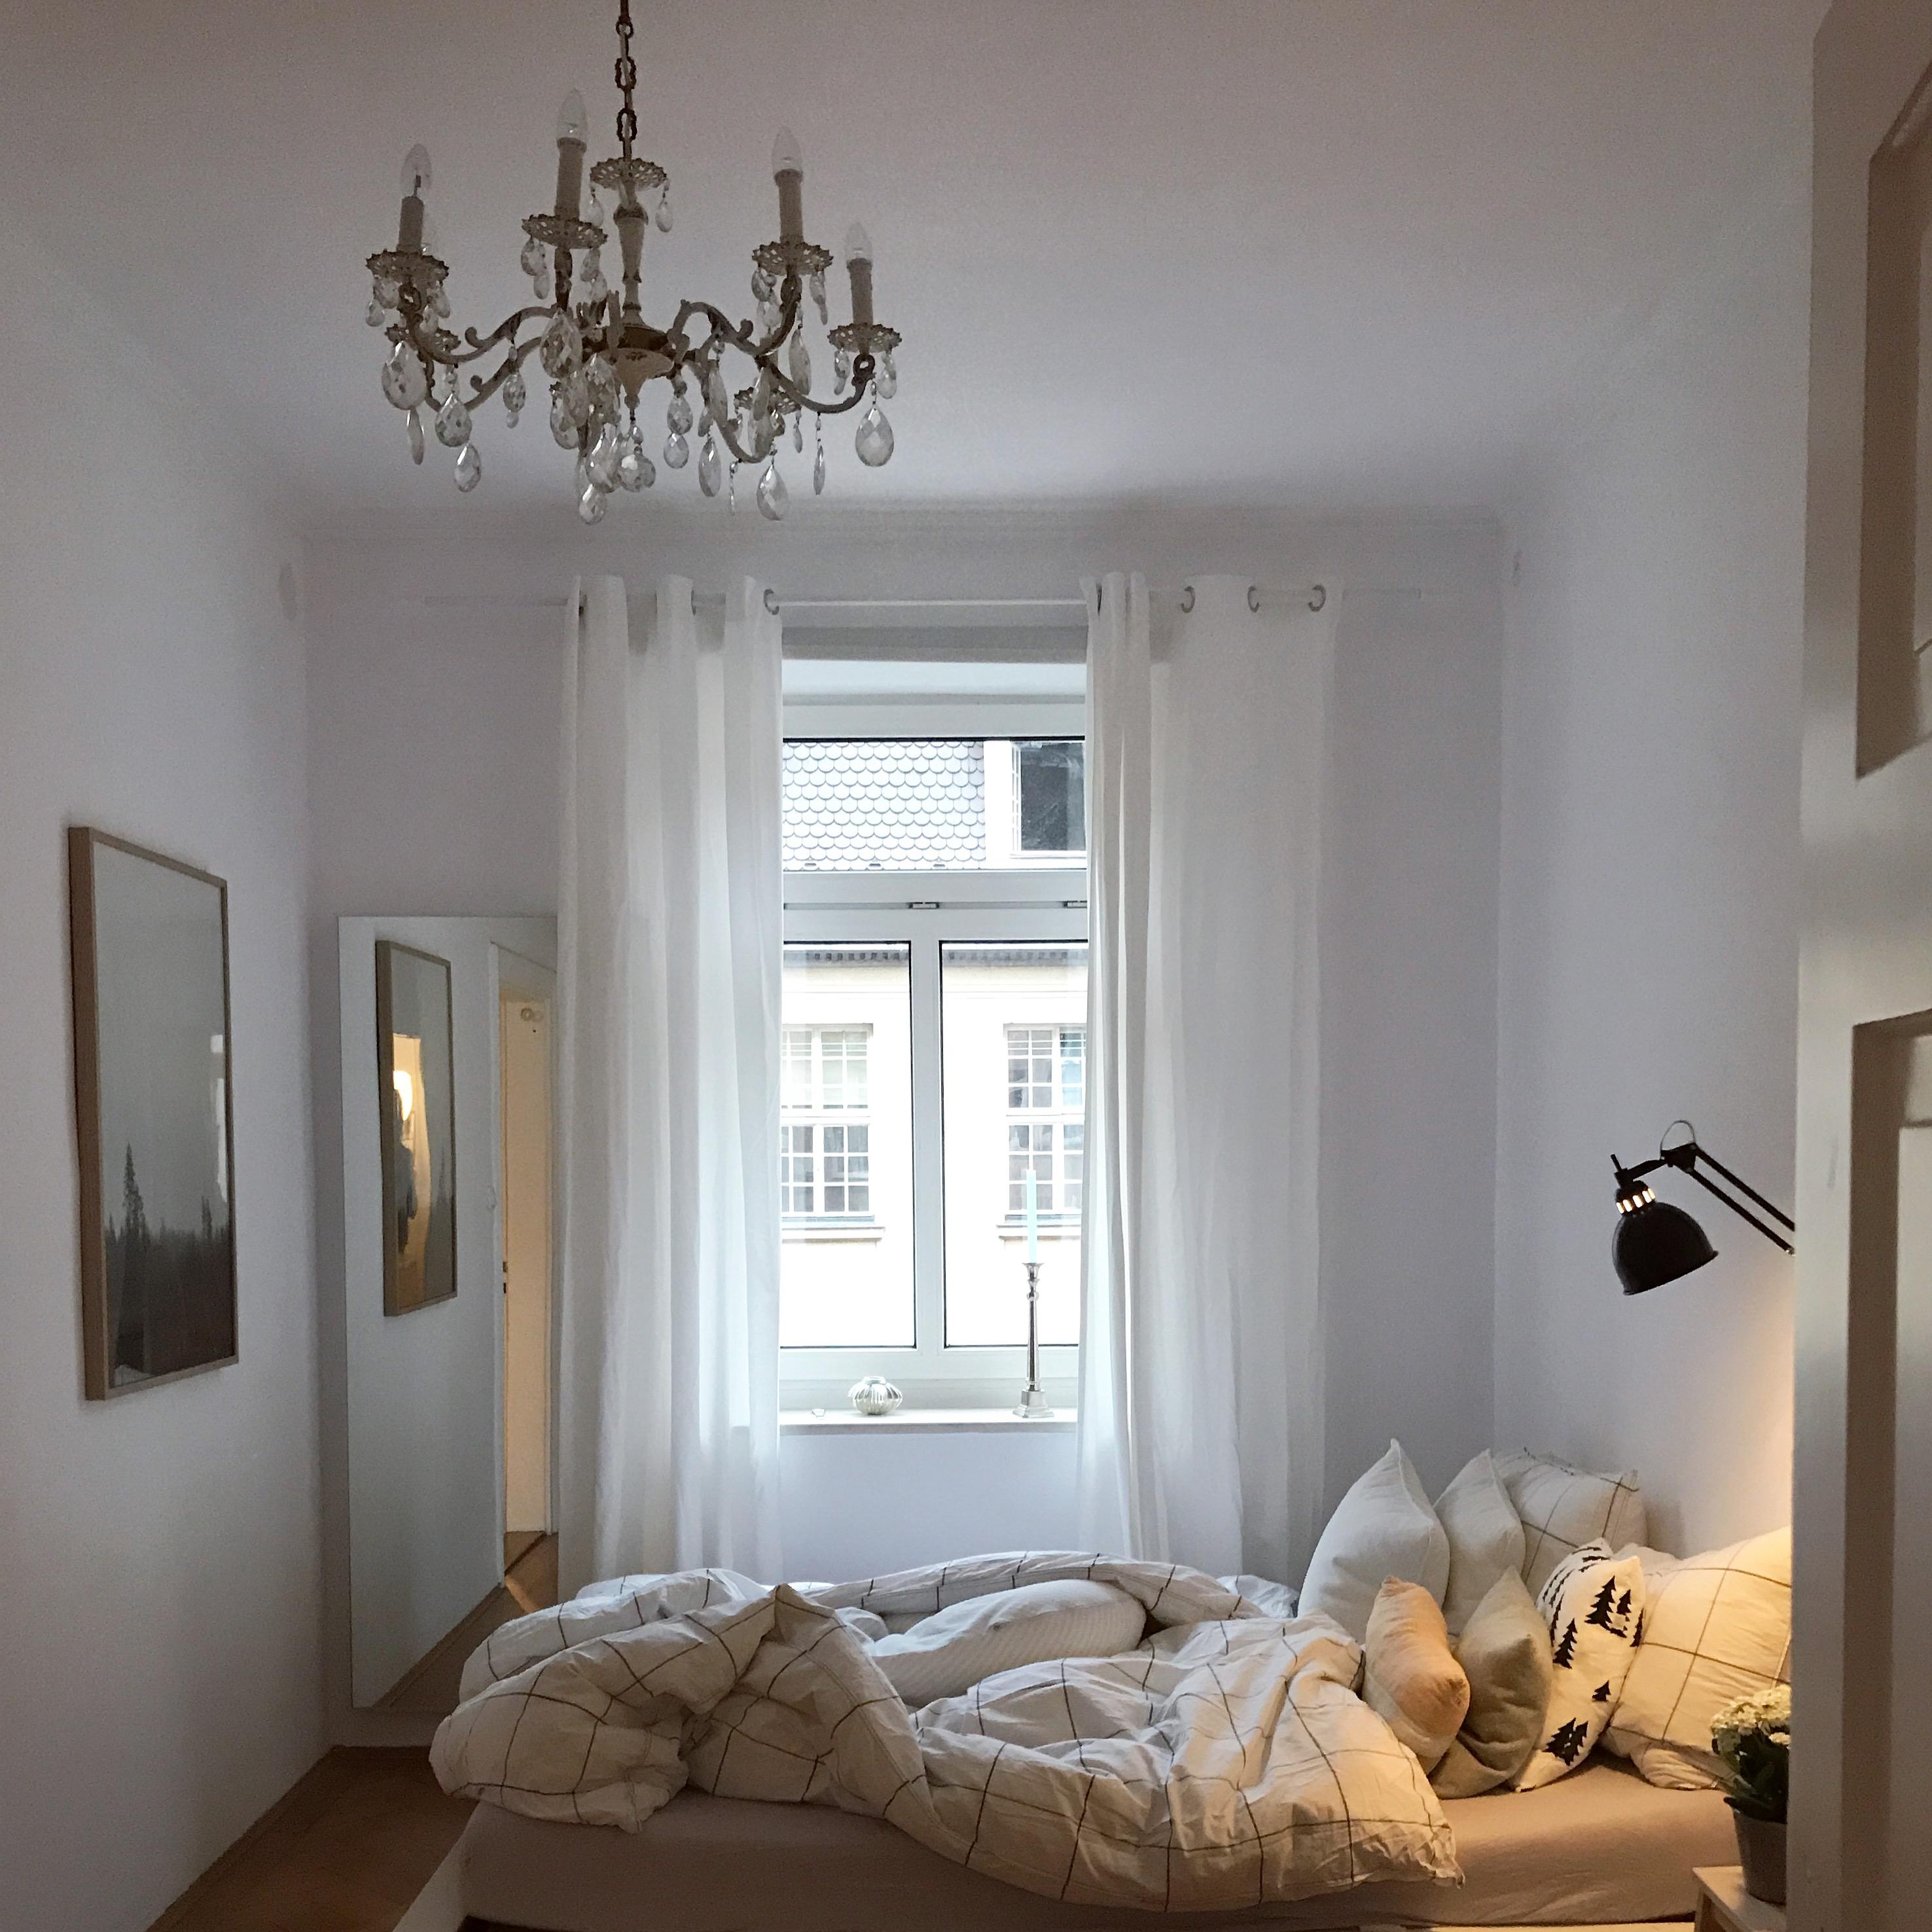 Das Wetter lädt zur Gemütlichkeit ein

#schlafzimmer #comfy #minimalism #gemütlichkeit #dekoideen #altbau #bedroom 